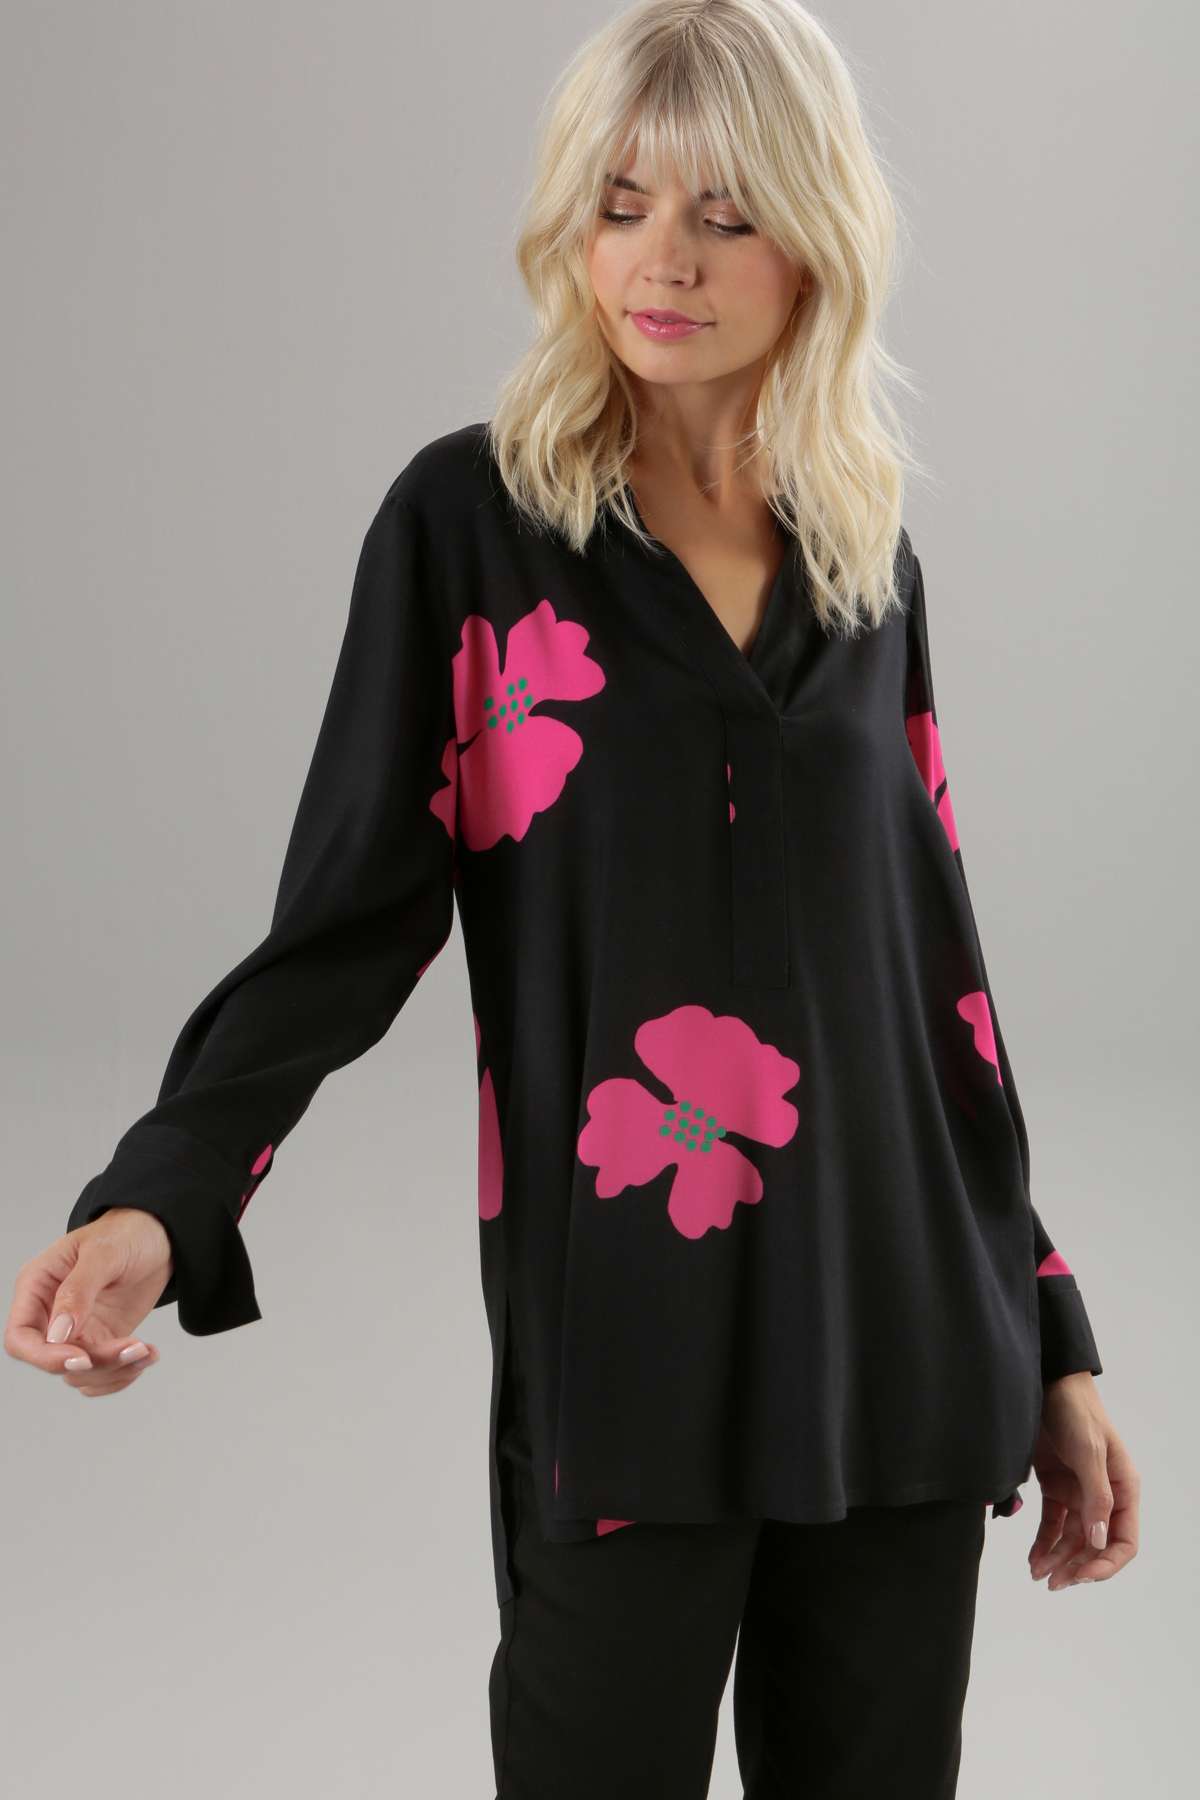 Длинная блузка с цветочным принтом - каждое изделие уникально.